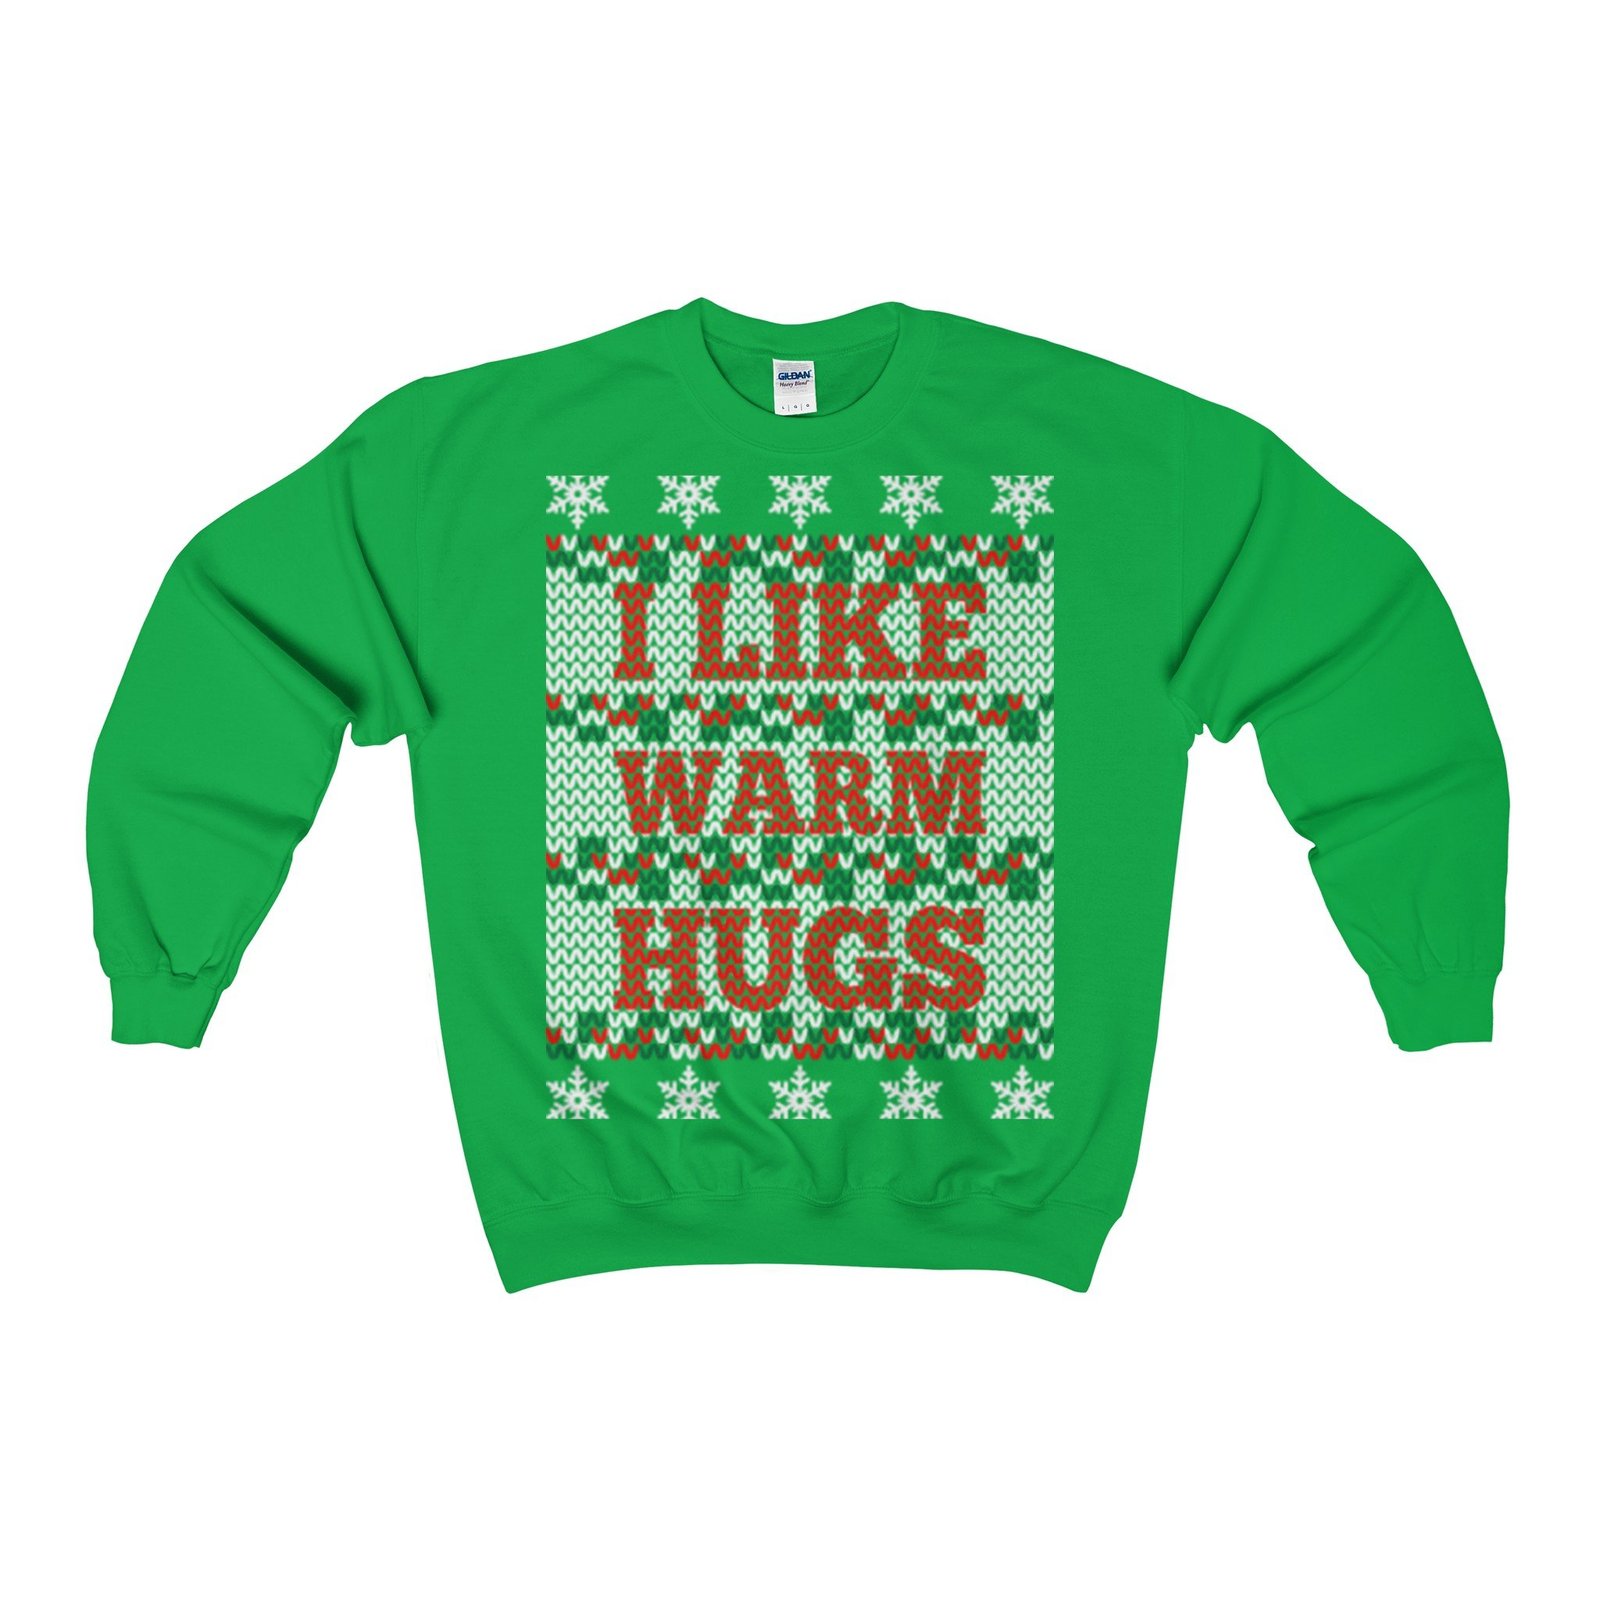 I like warm hugs ugly christmas sweatshirt xmas - $29.95 - $36.95